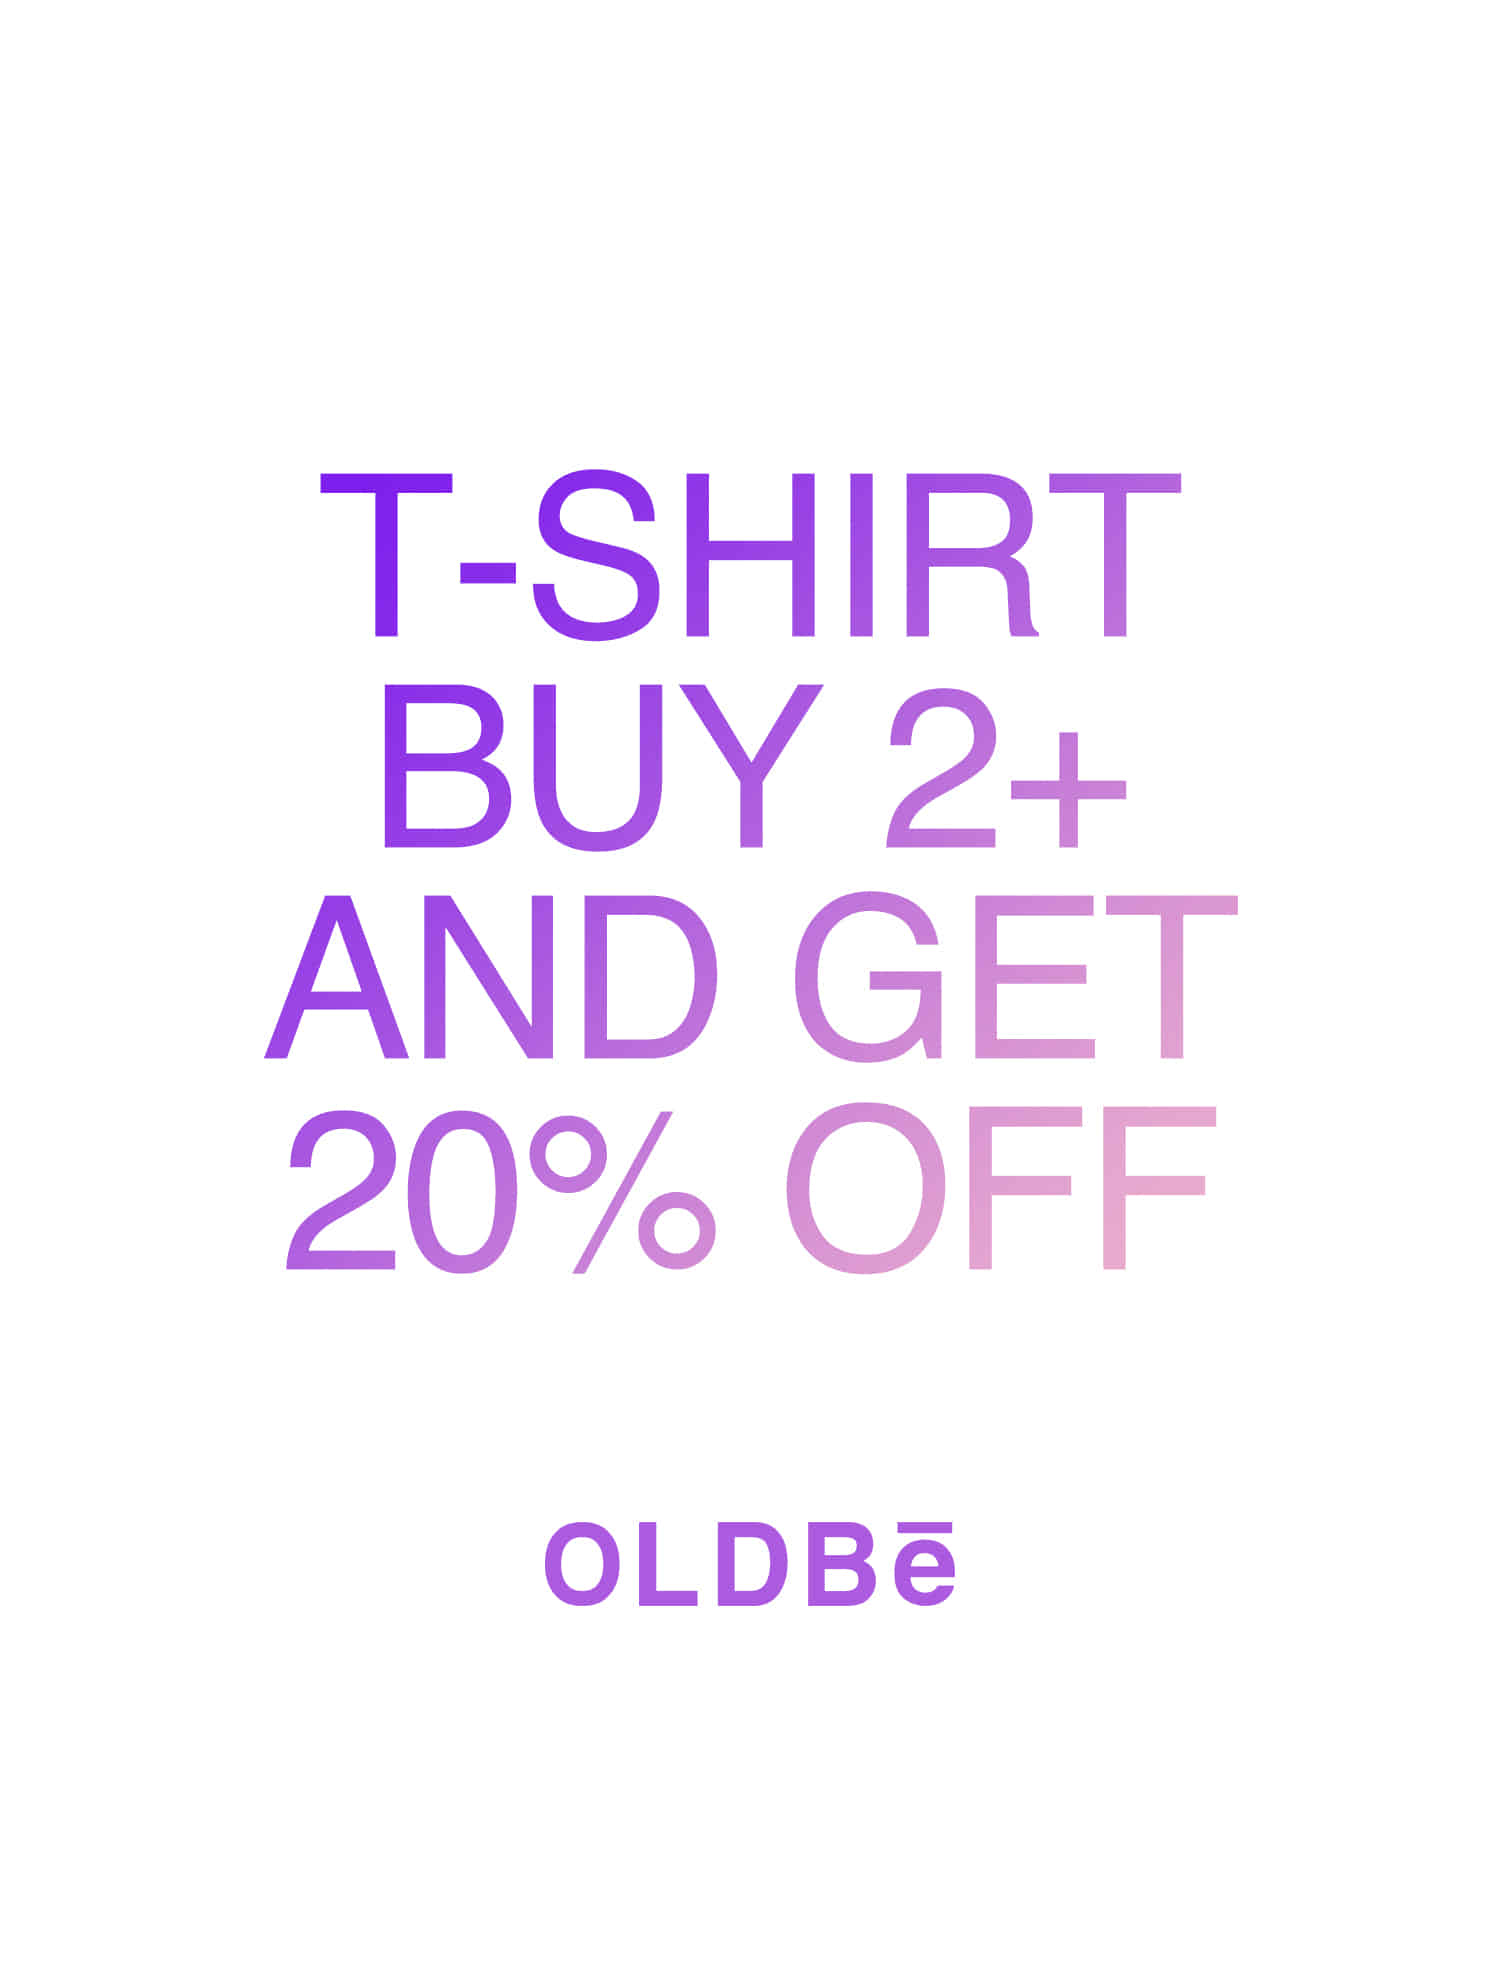 [올드비] BUY 2+ GET 20% OFF (티셔츠 2장 이상 구매시, 20% 할인)